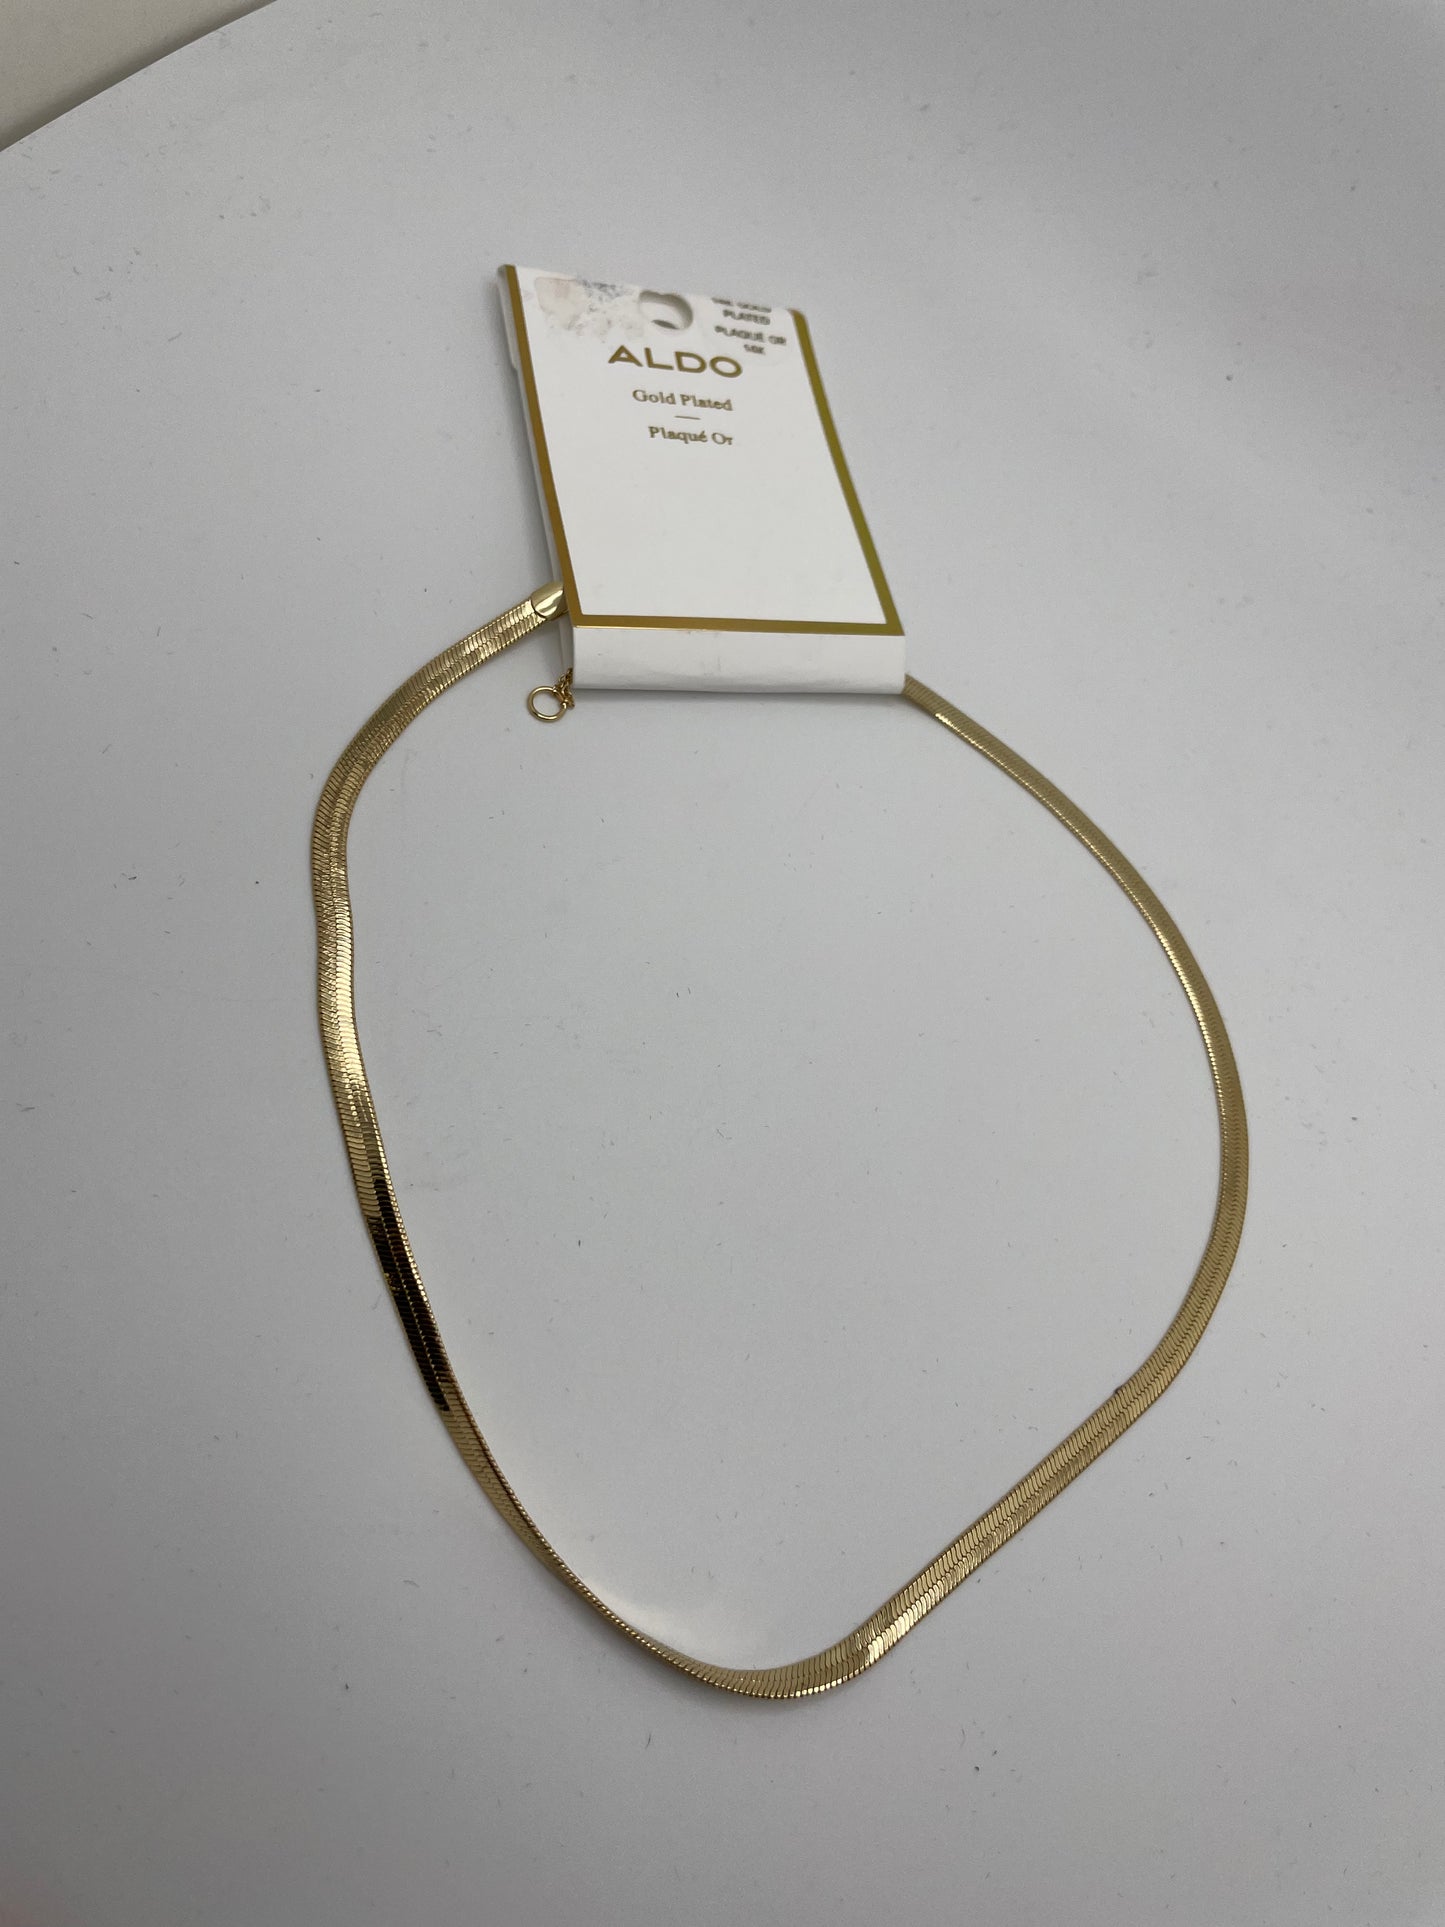 Aldo necklace